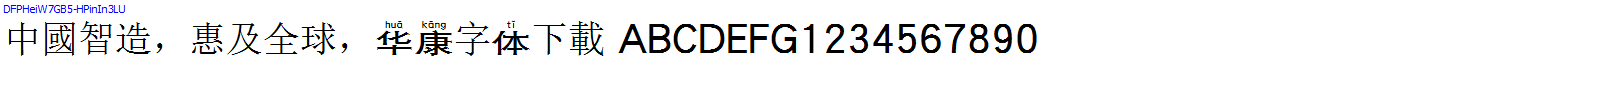 華康字體DFPHeiW7GB5-HPinIn3LU.TTF